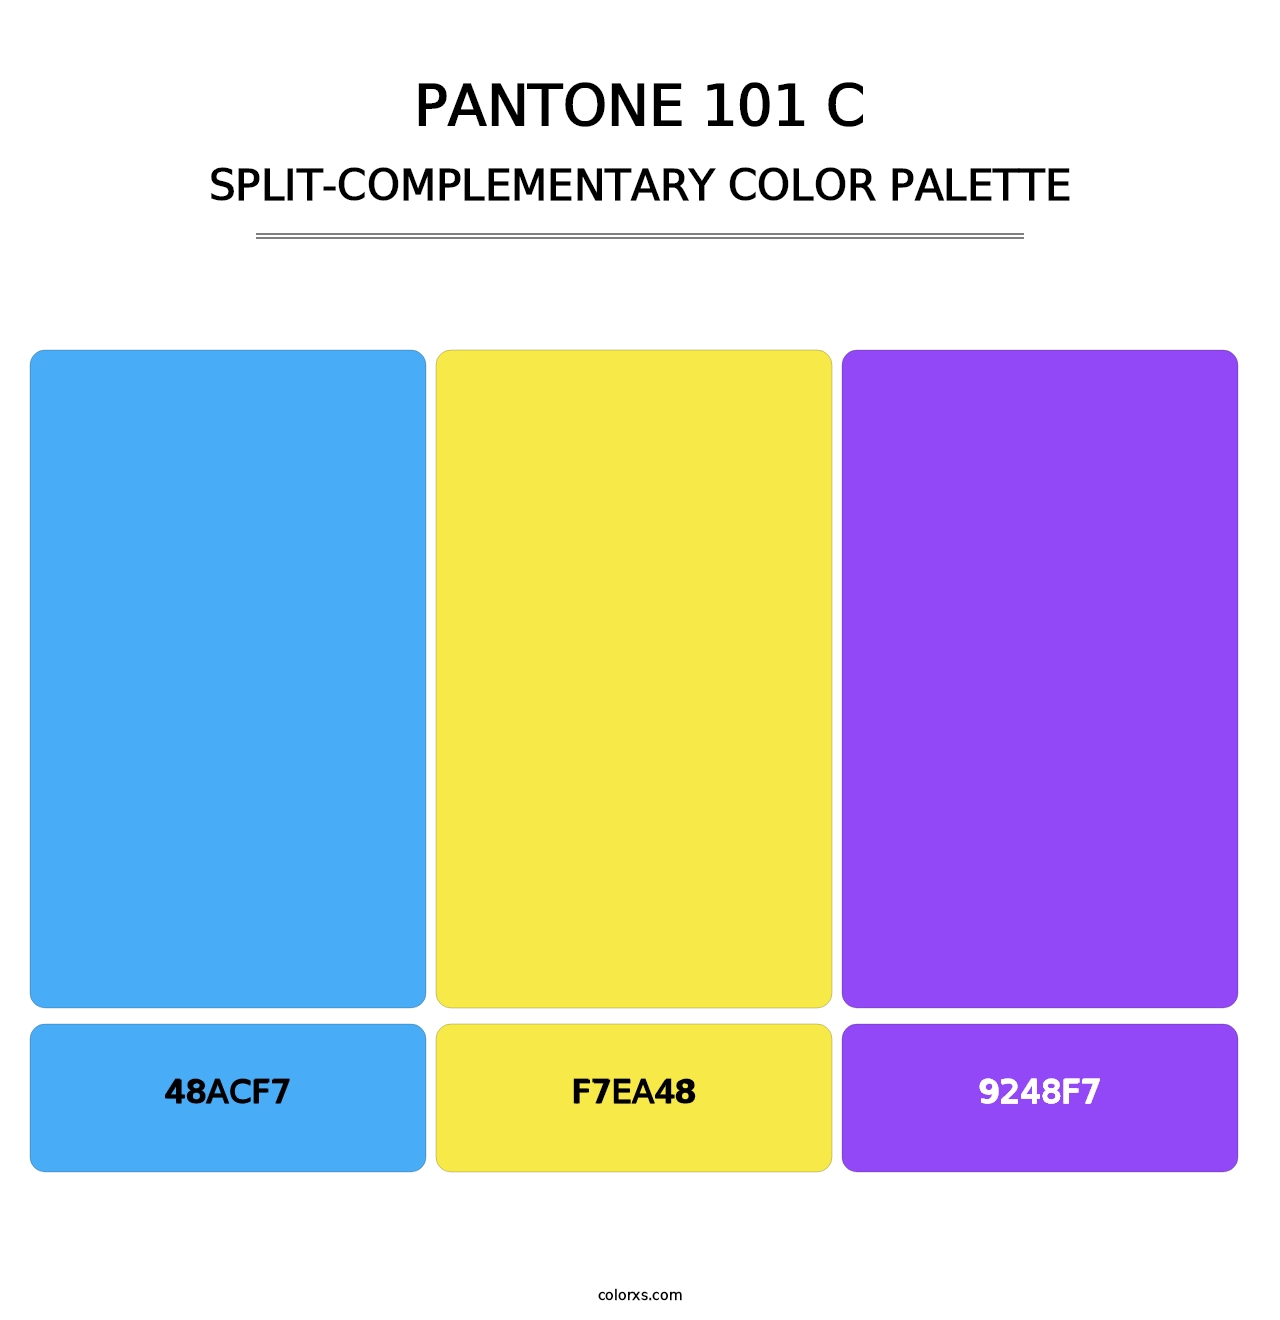 PANTONE 101 C - Split-Complementary Color Palette